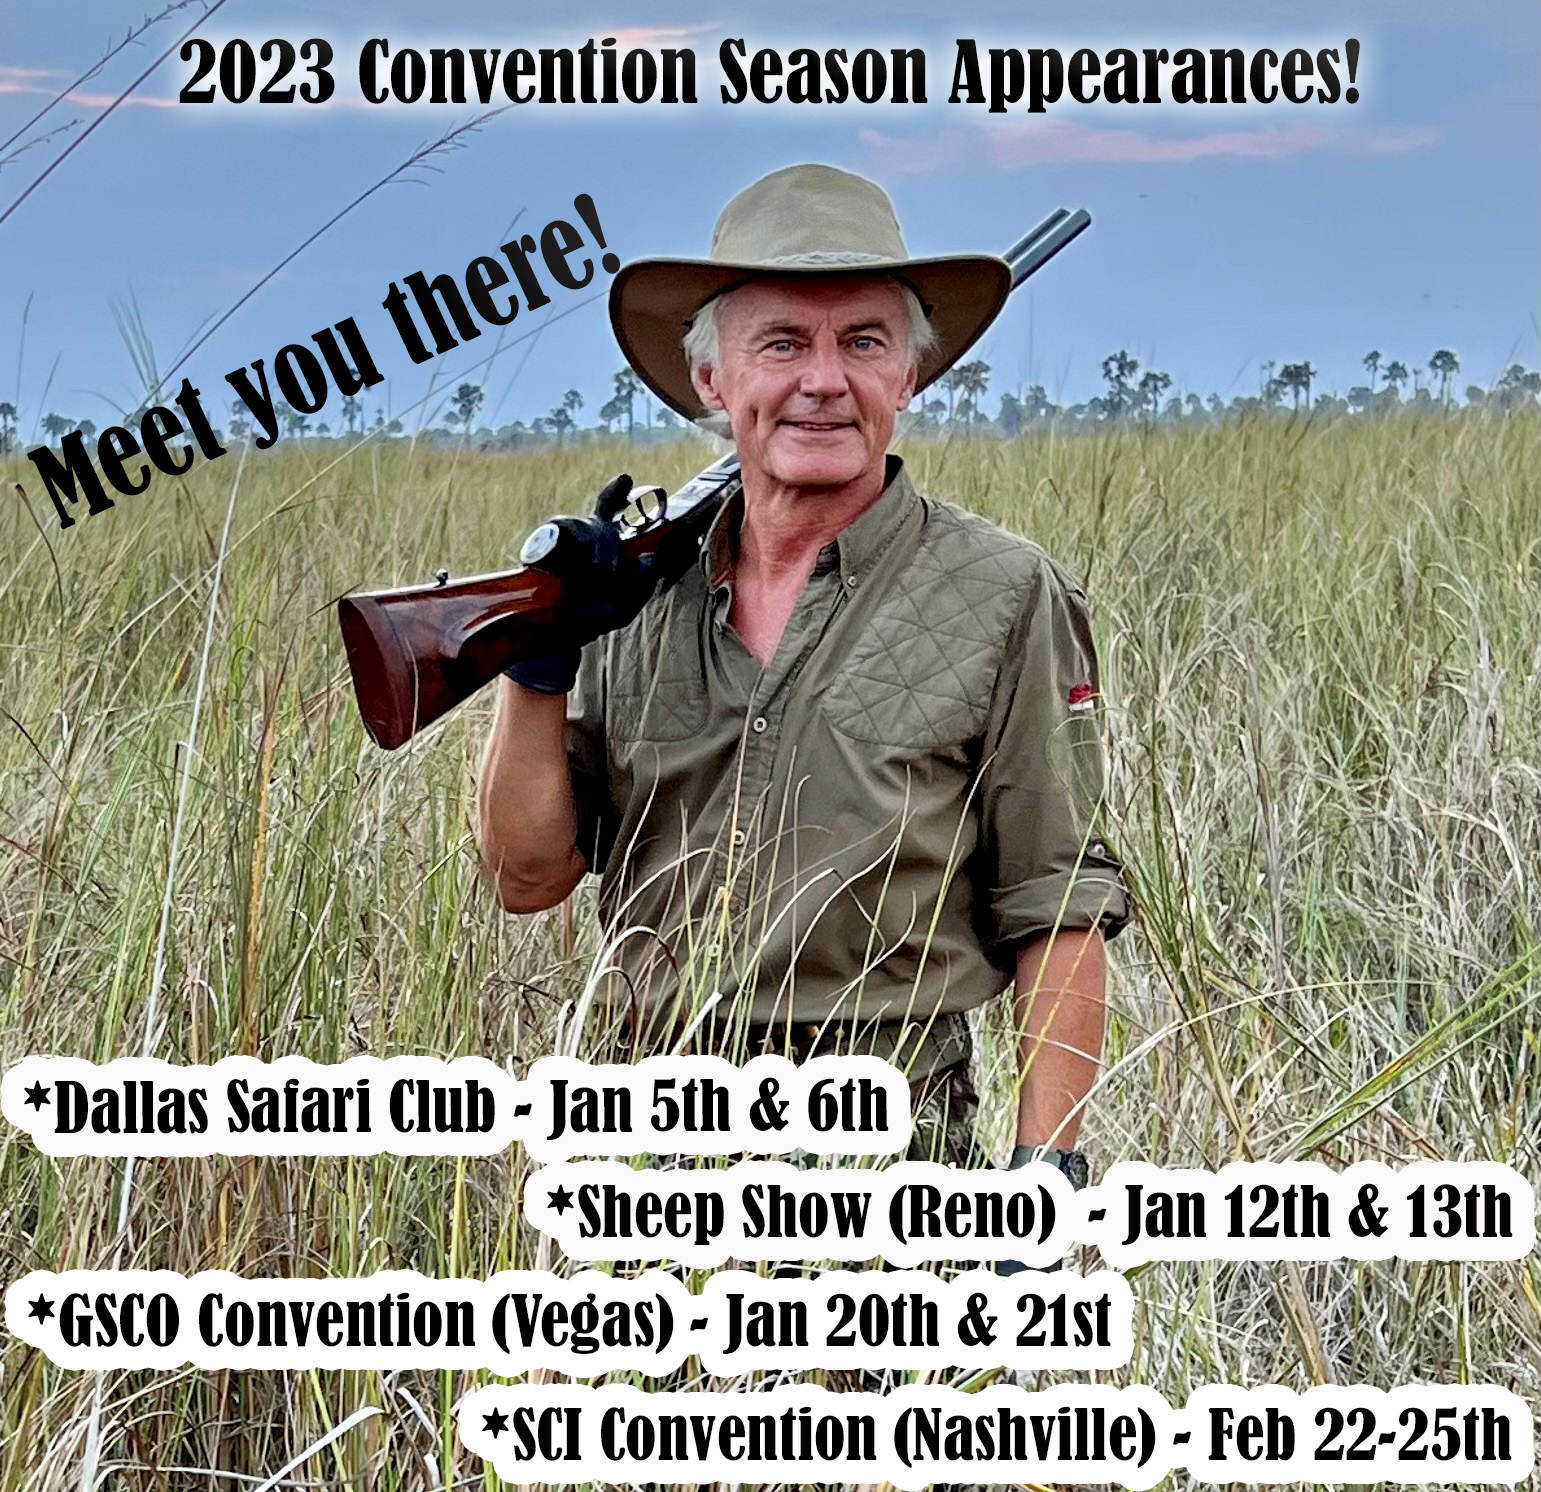 2023 Convention Schedule